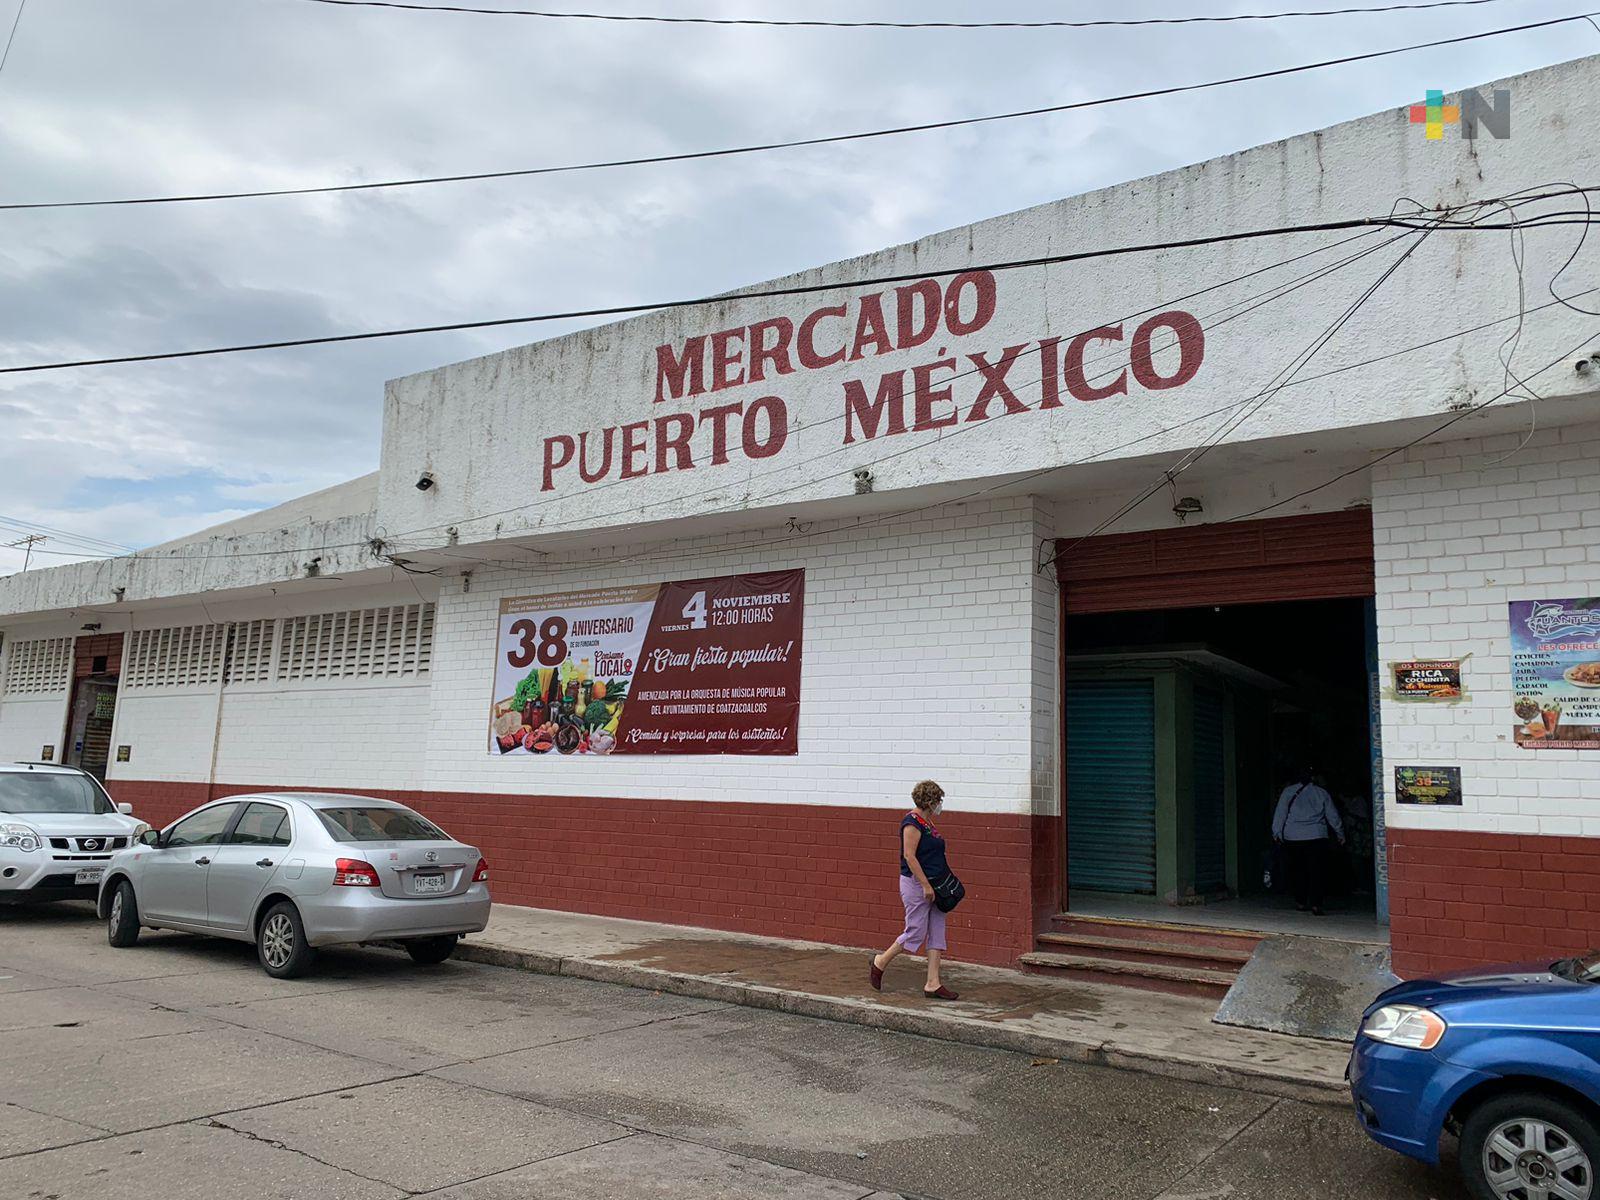 Celebrarán 38 aniversario de mercado Puerto México